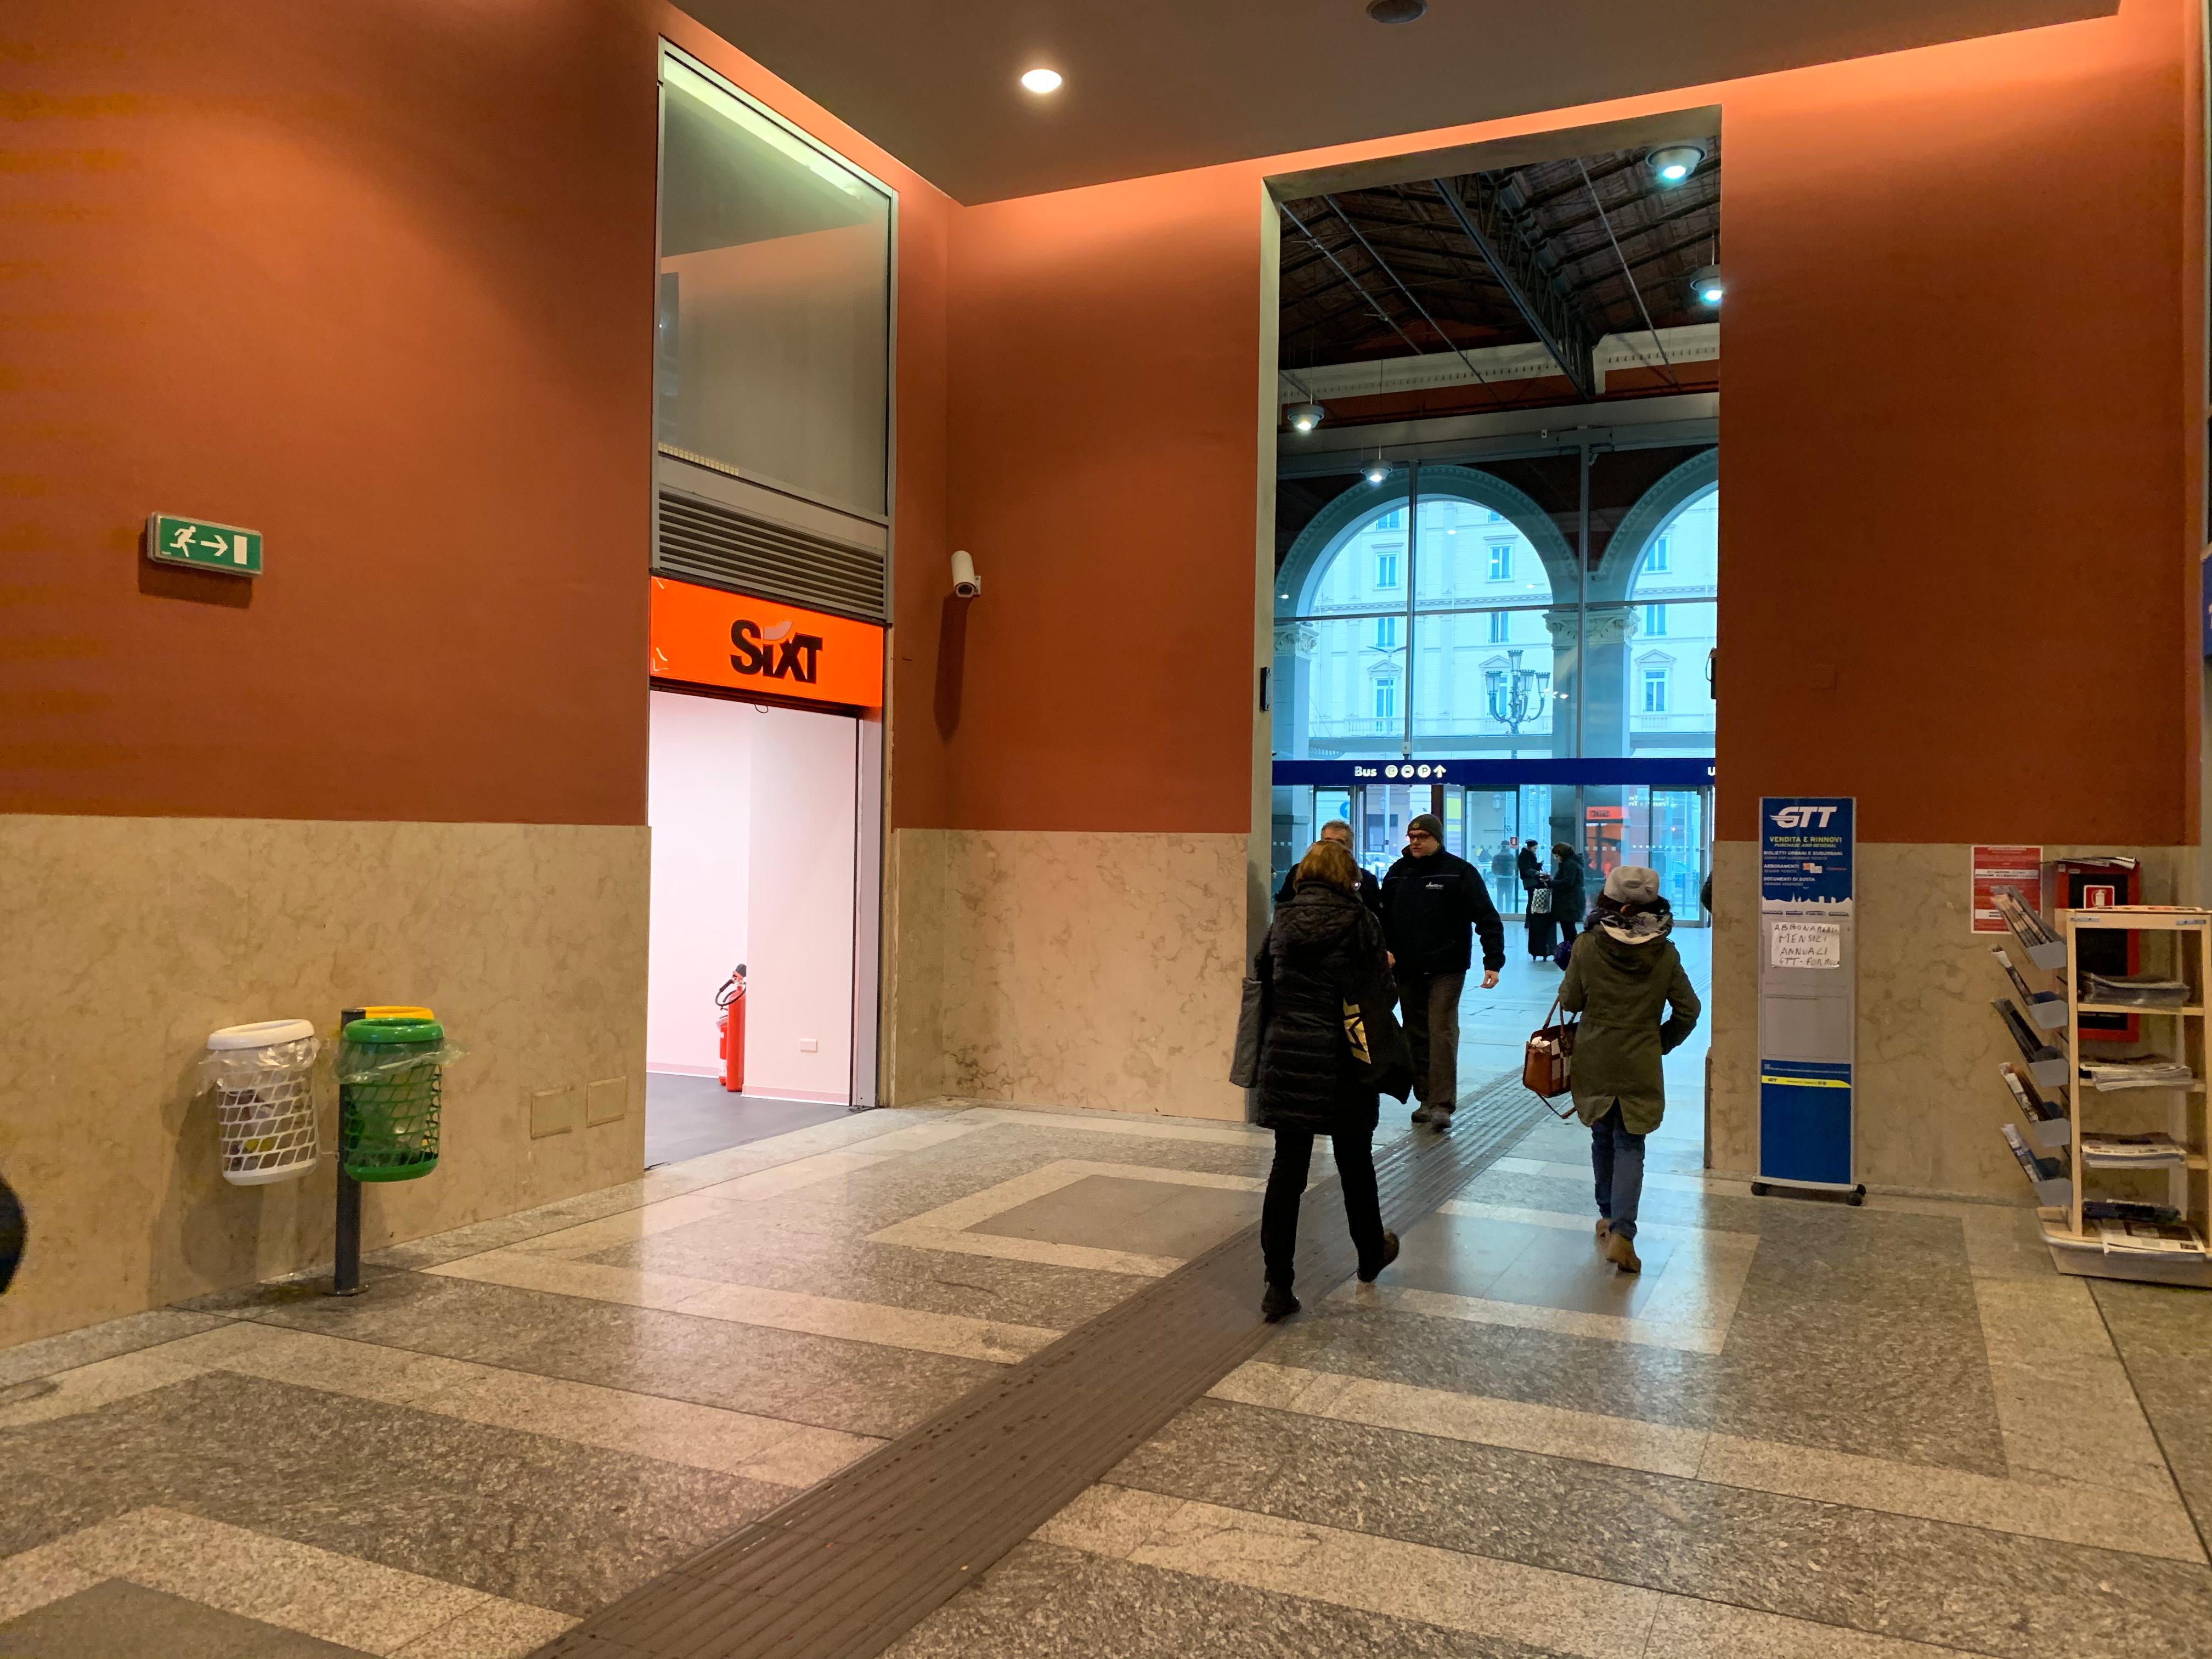 Fotos - Sixt Noleggio Auto e Noleggio Furgoni Torino Stazione Porta Nuova - 4